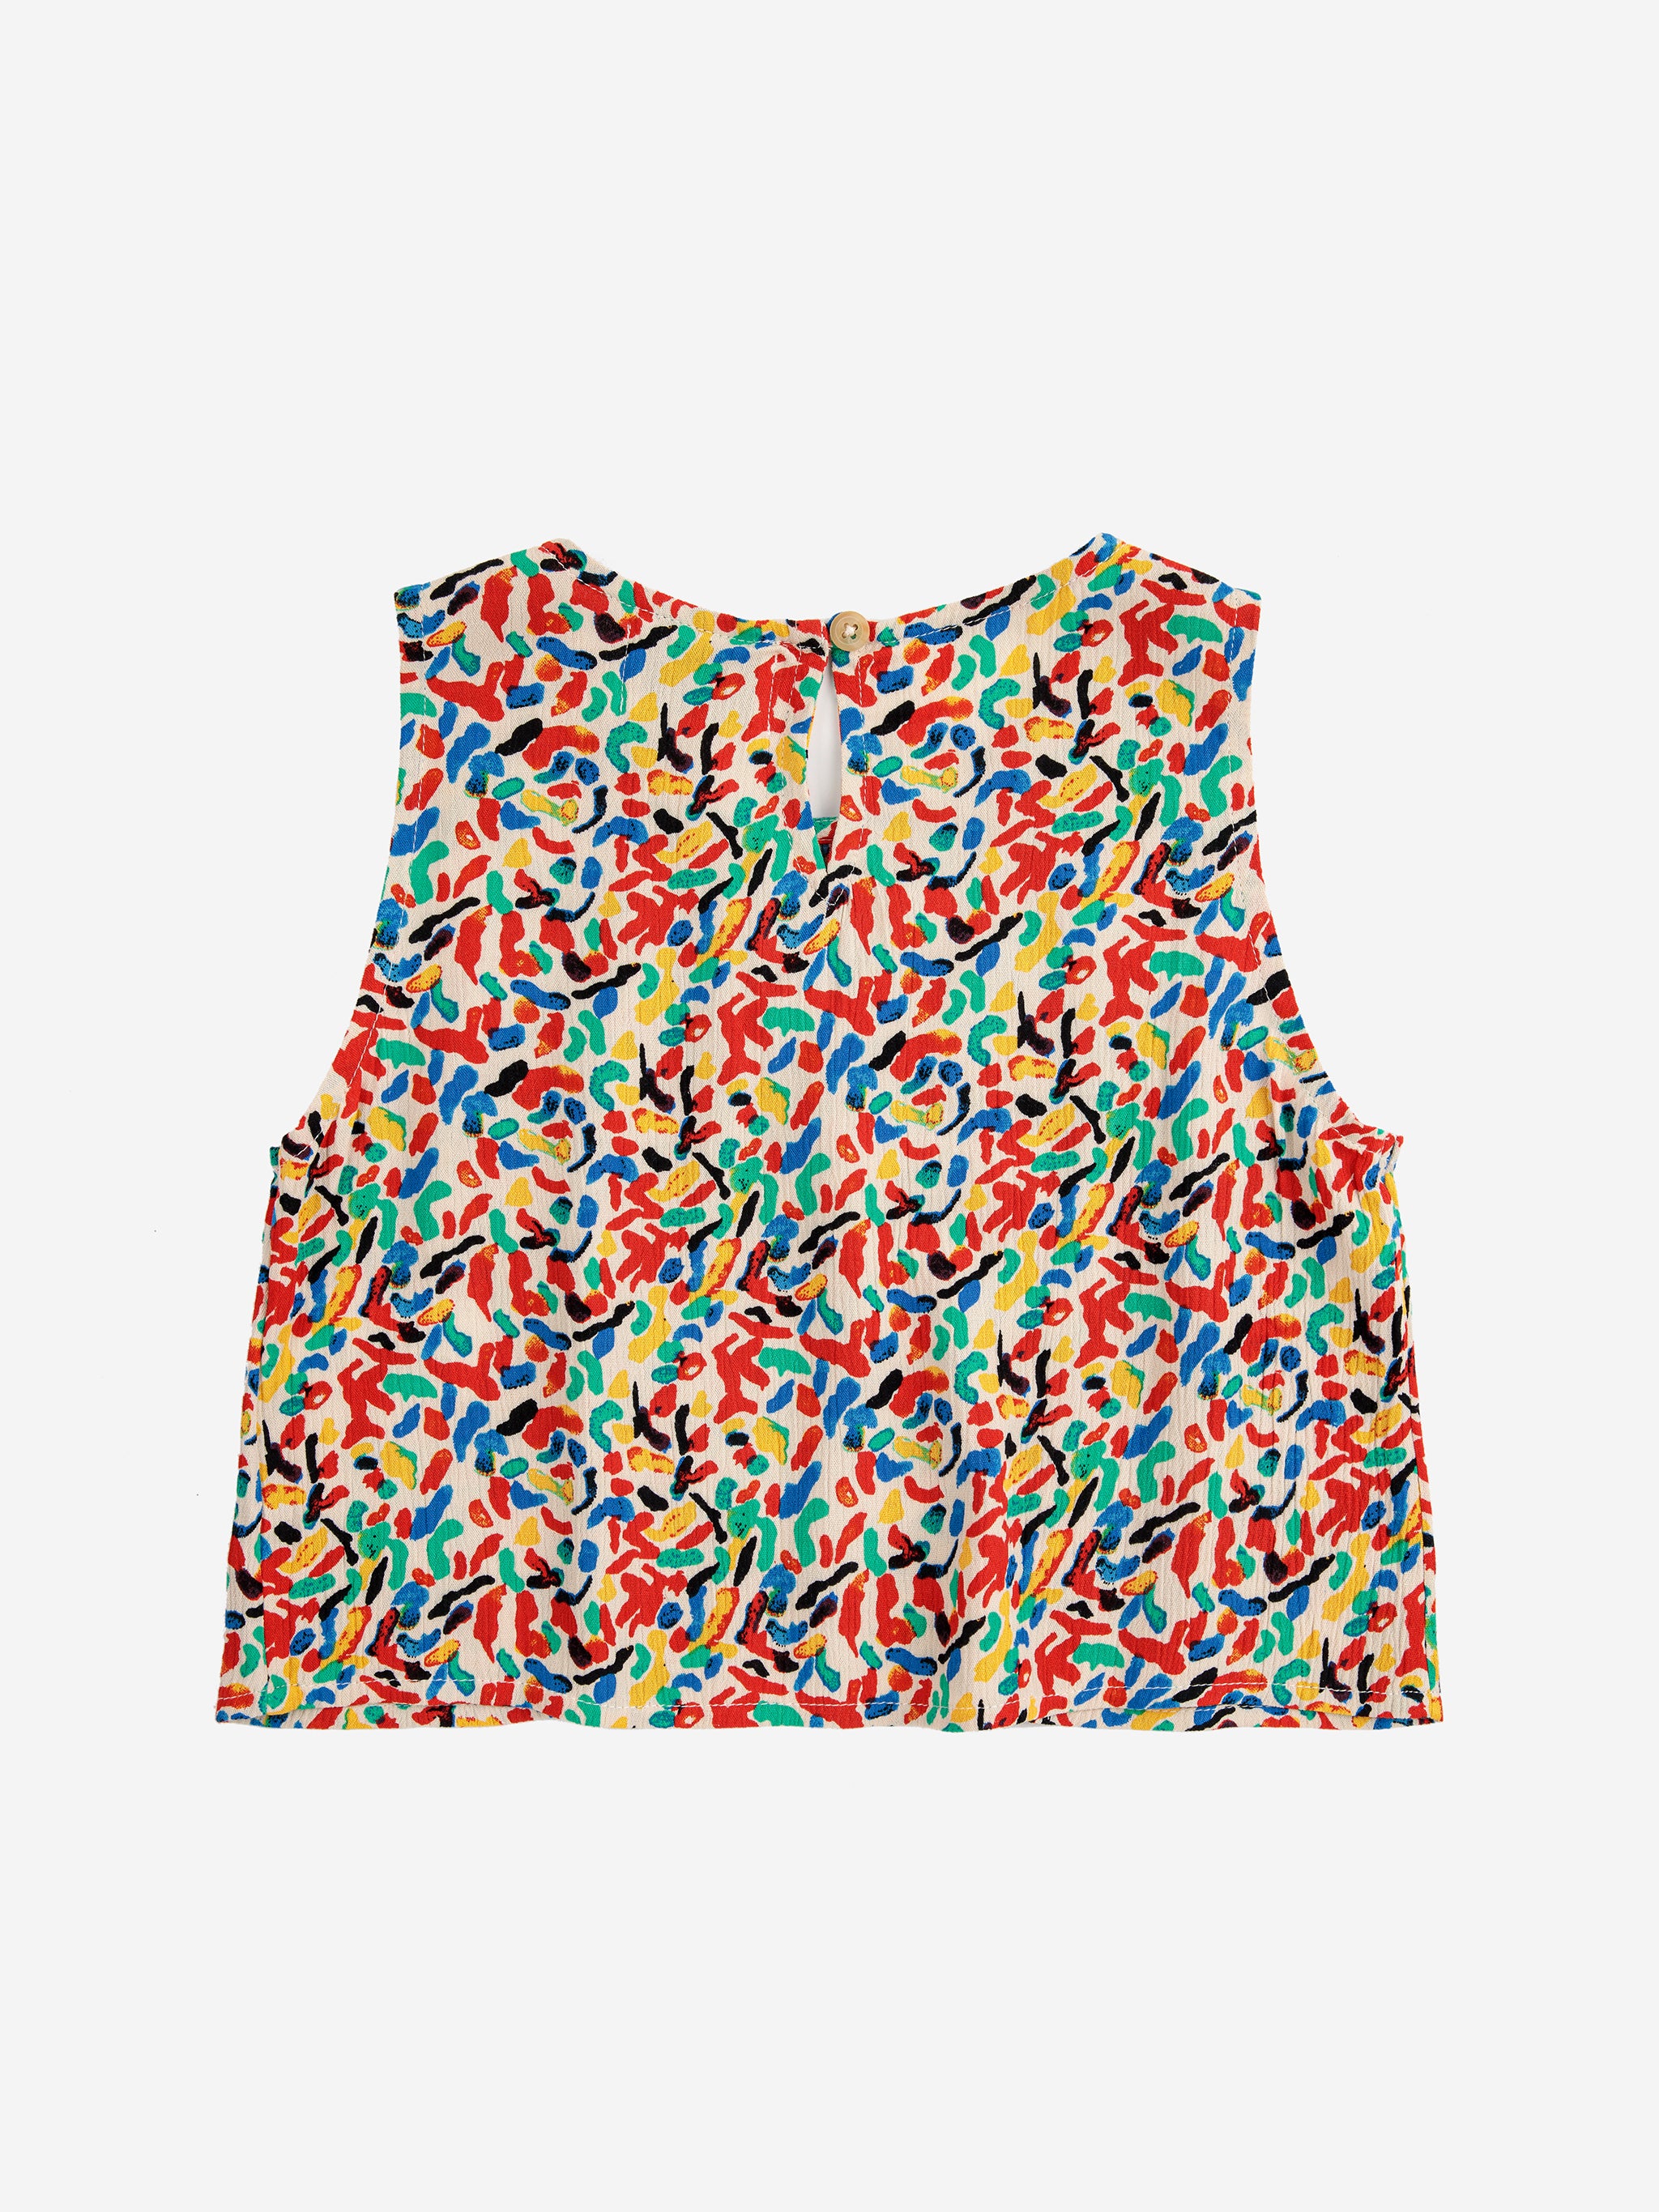 Bobo Choses Confetti All Over Woven Top - Multicolor